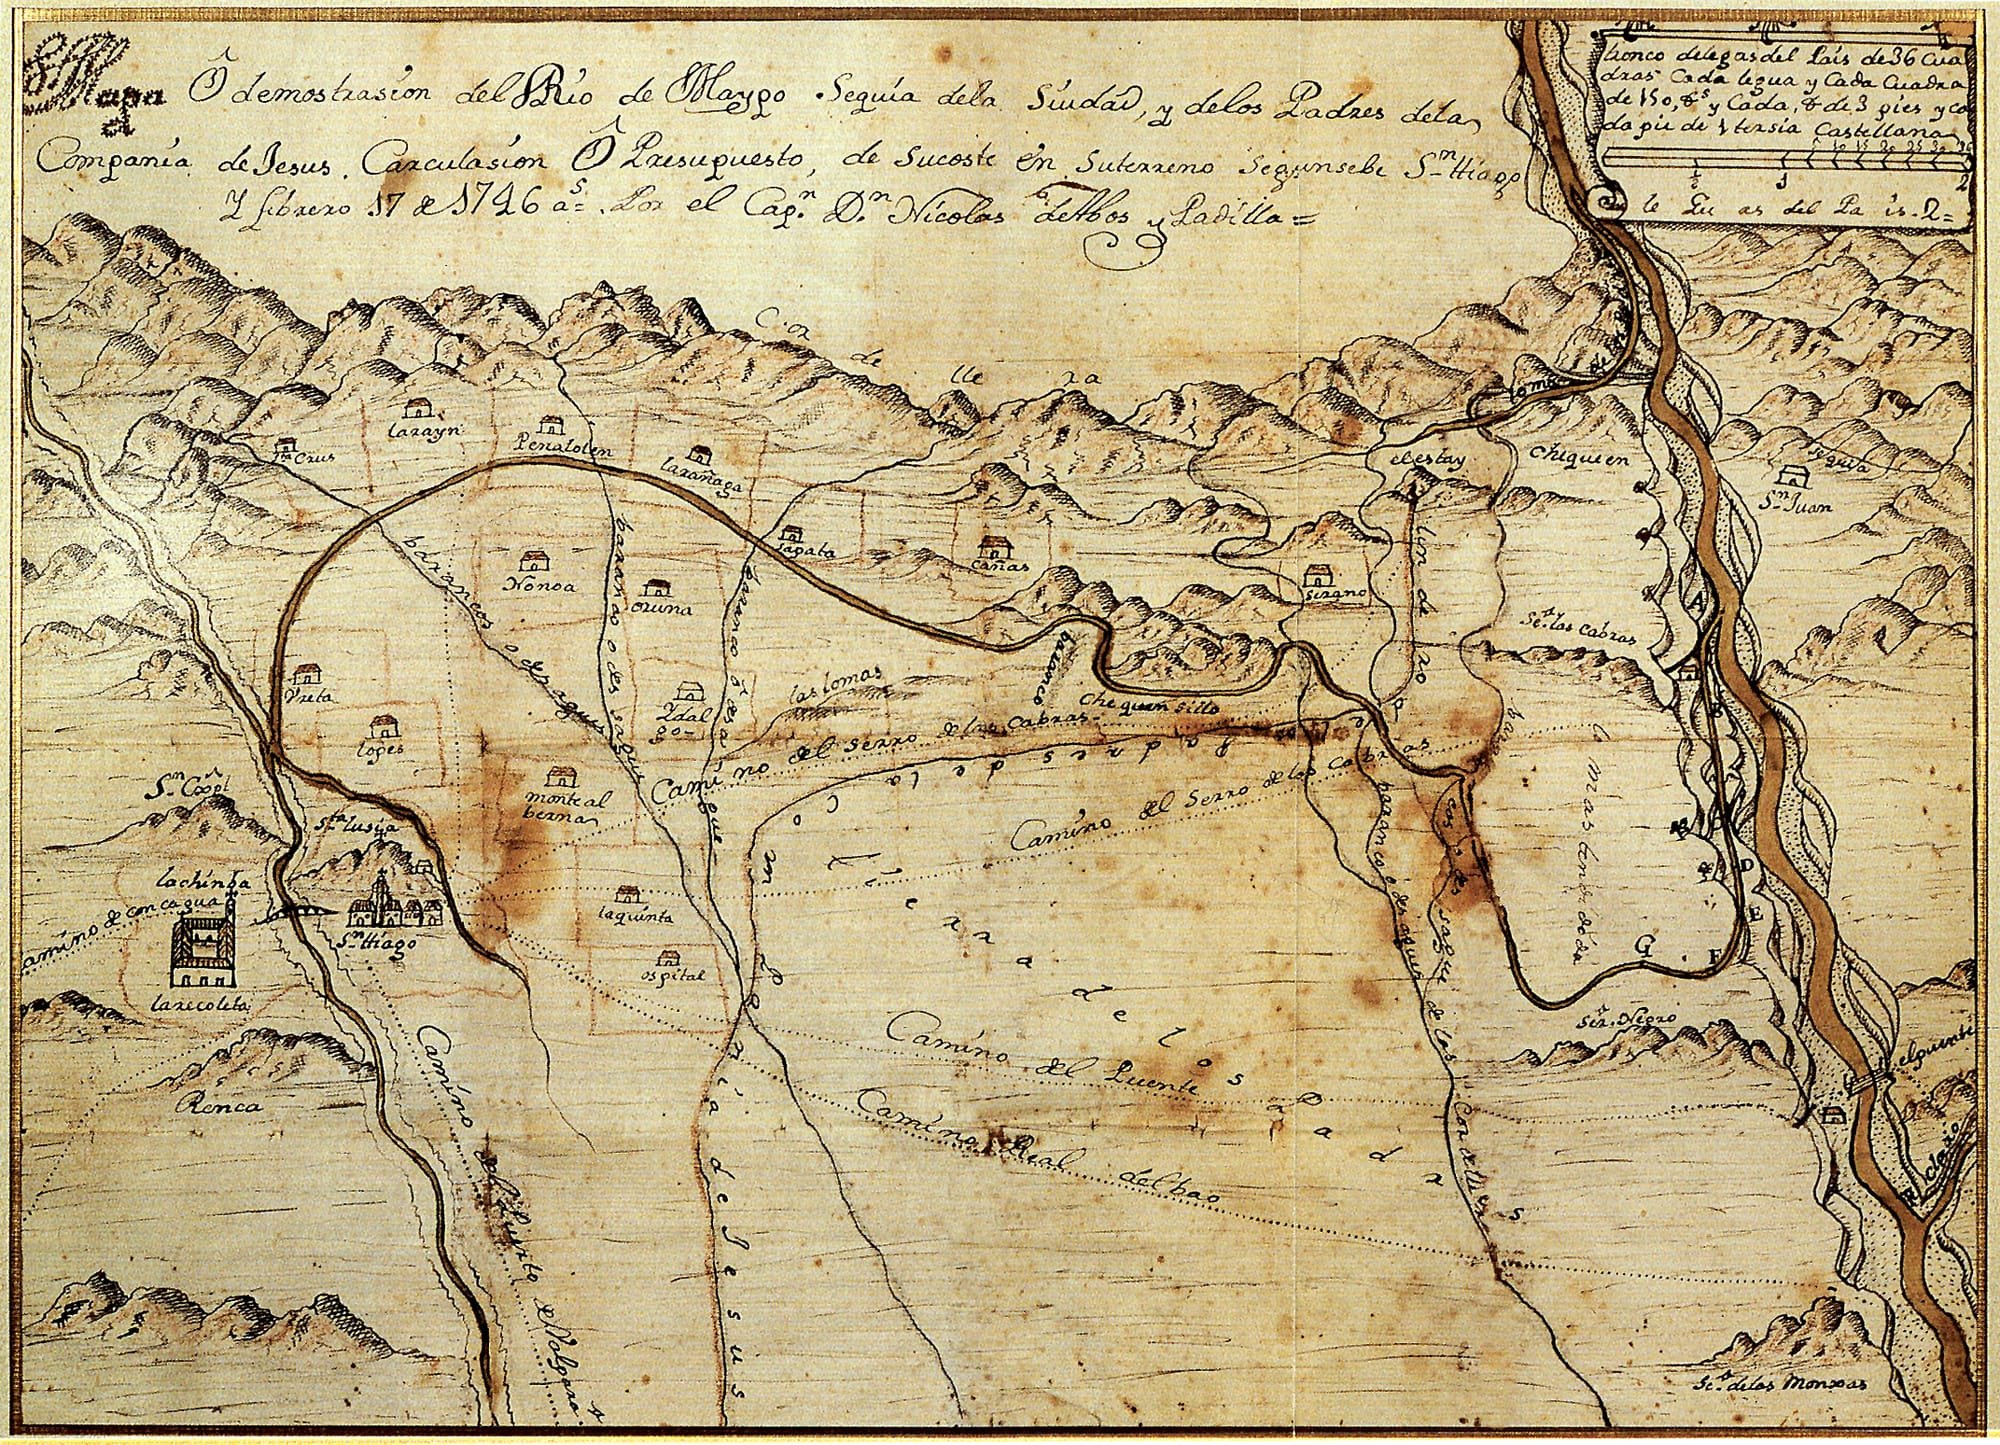 1746 Mapa O Demostración de Rio de Maypo